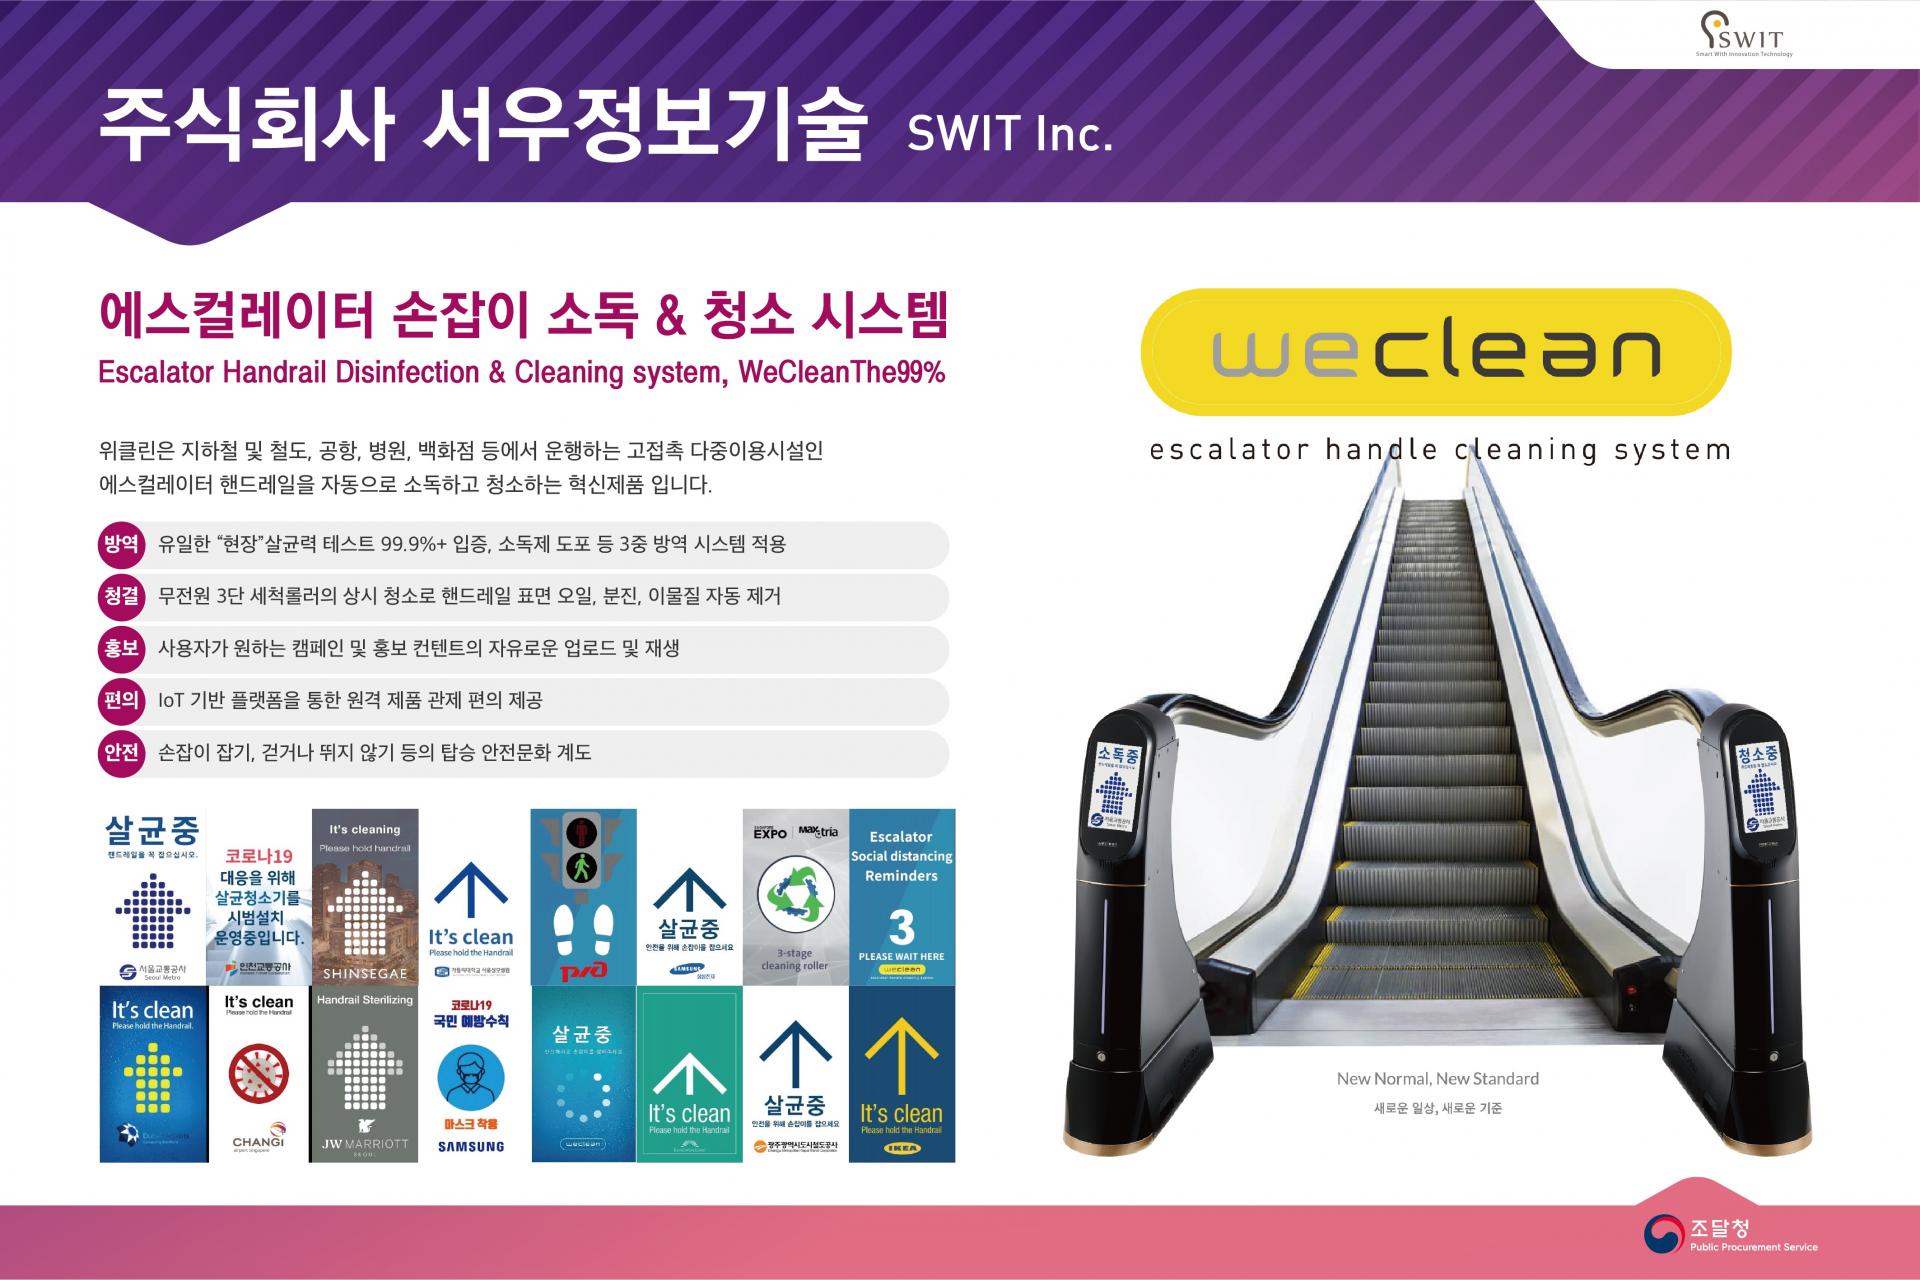 조달청 혁신제품 전시회 에스컬레이터 손잡이 살균 청소기 위클린 포스터